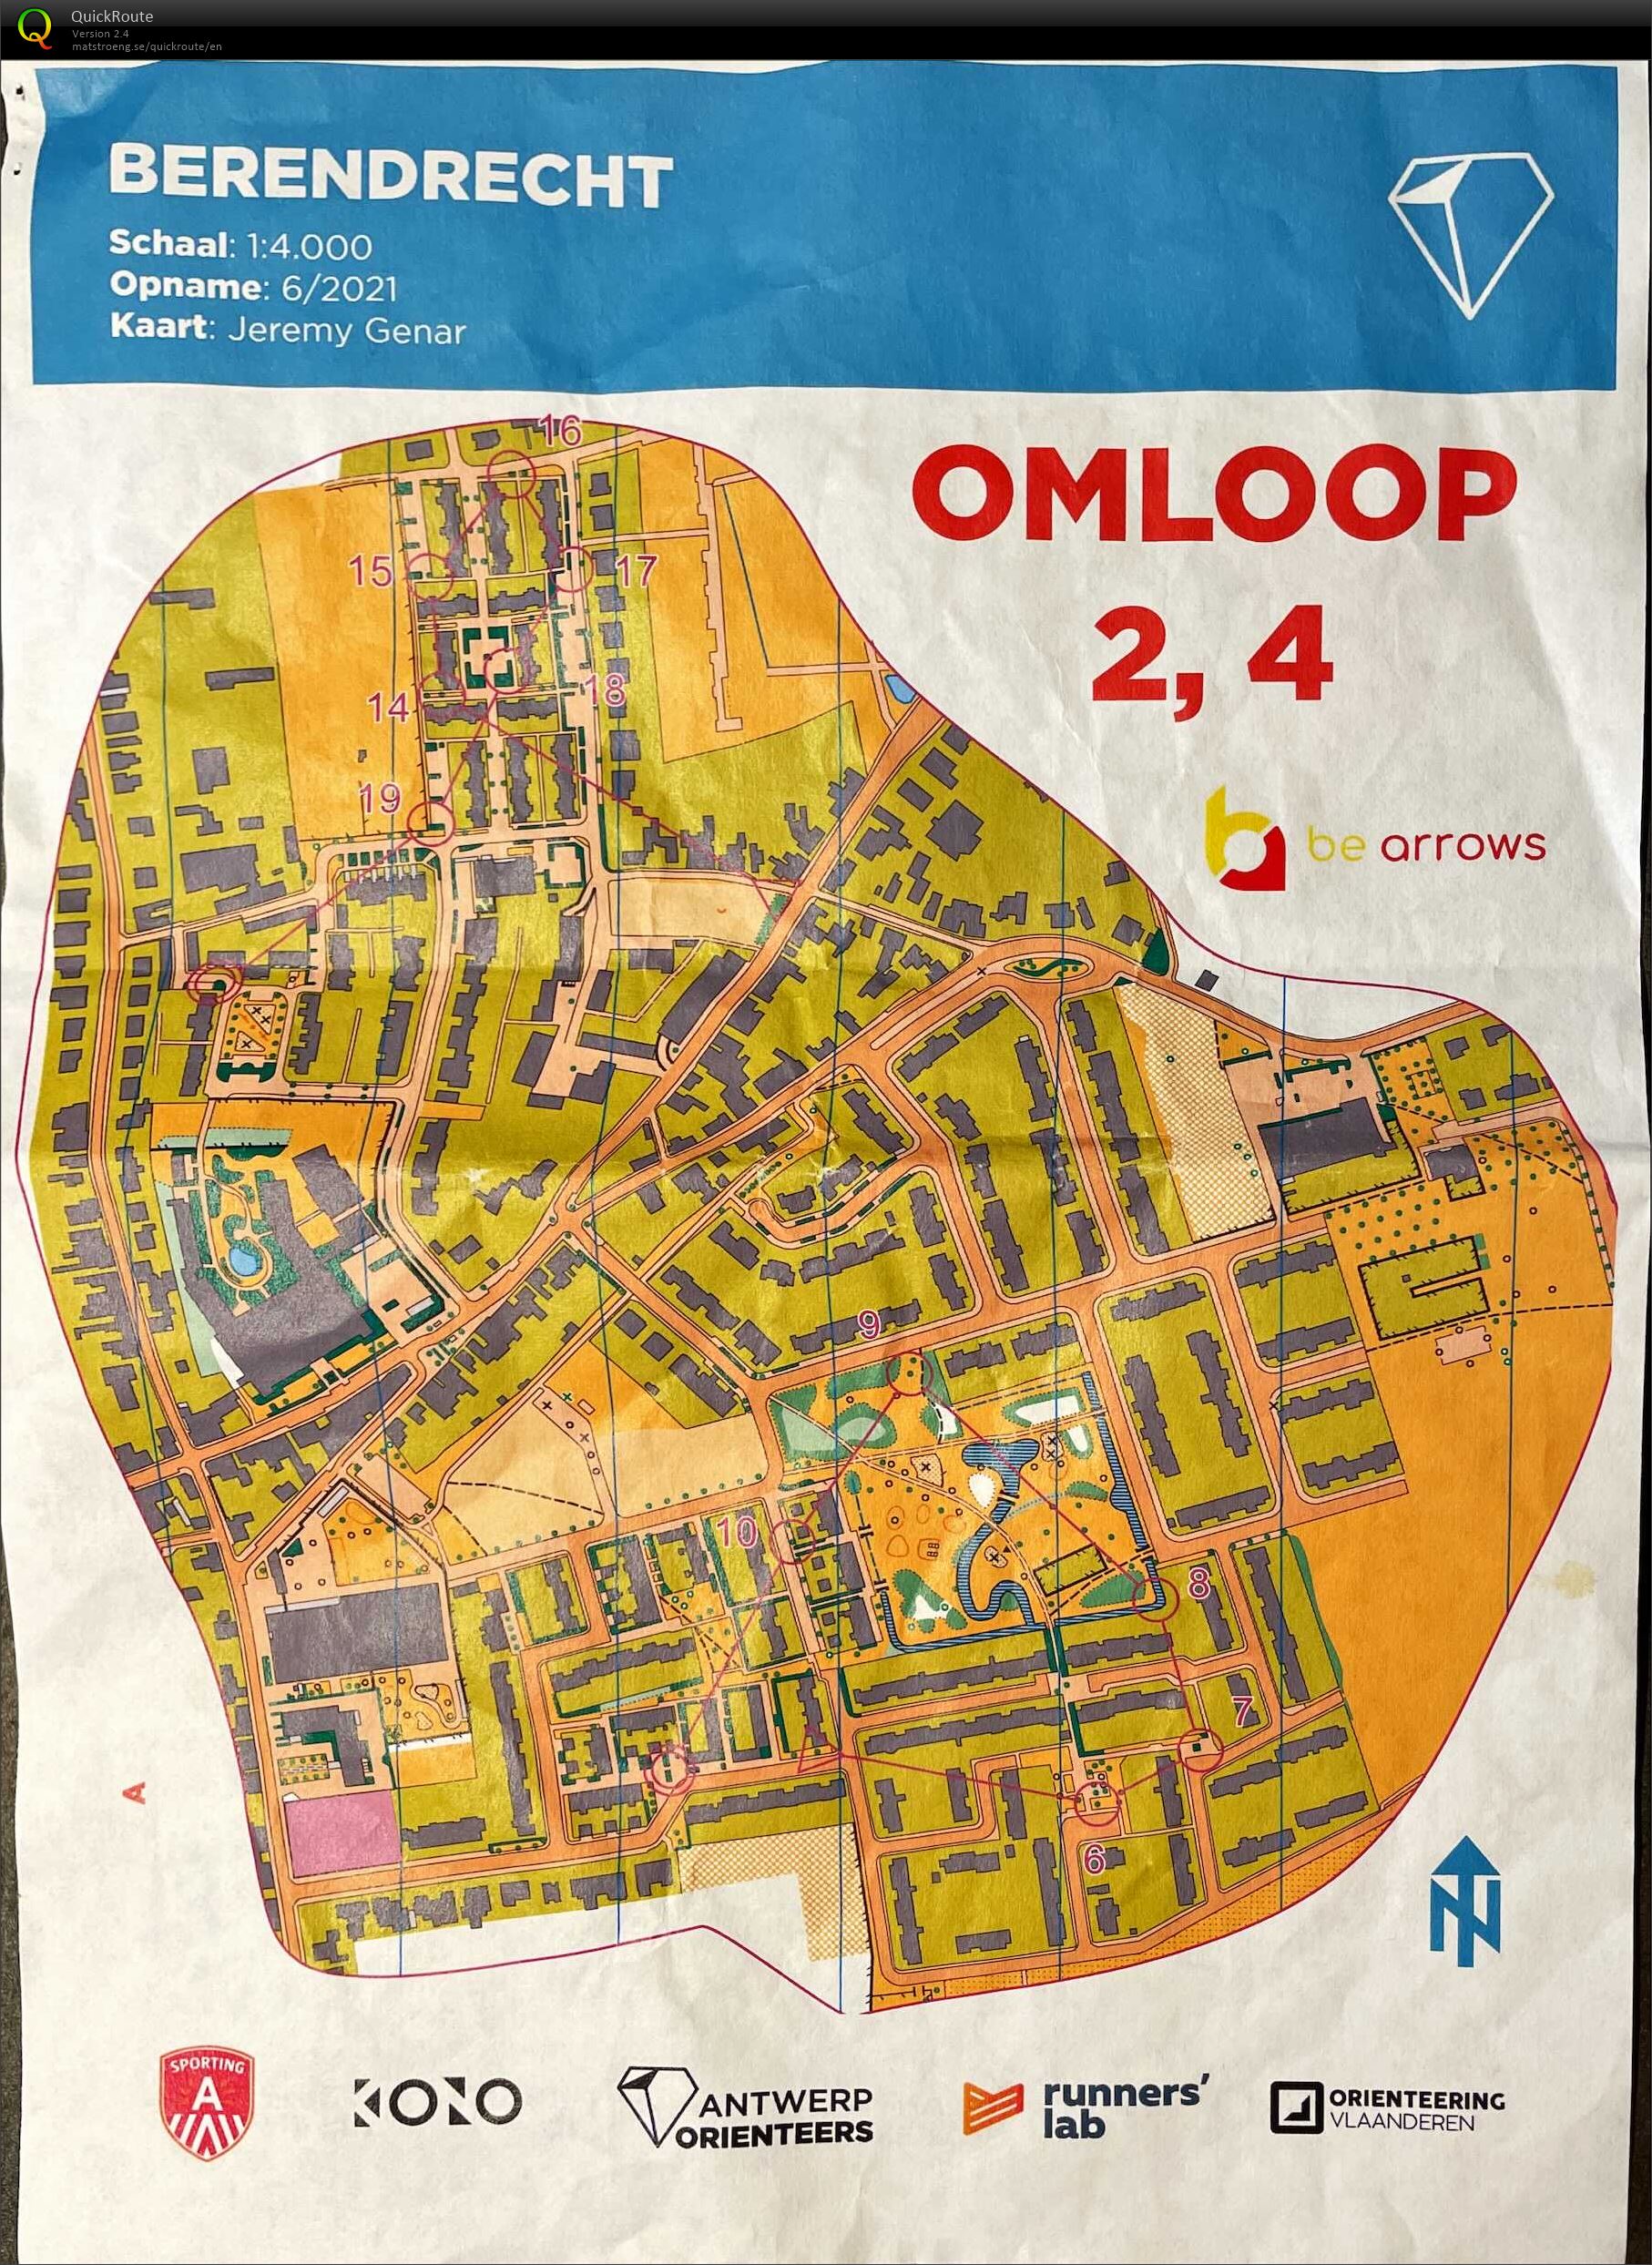 Berendrecht - Omloop 2,4 (11.06.2021)